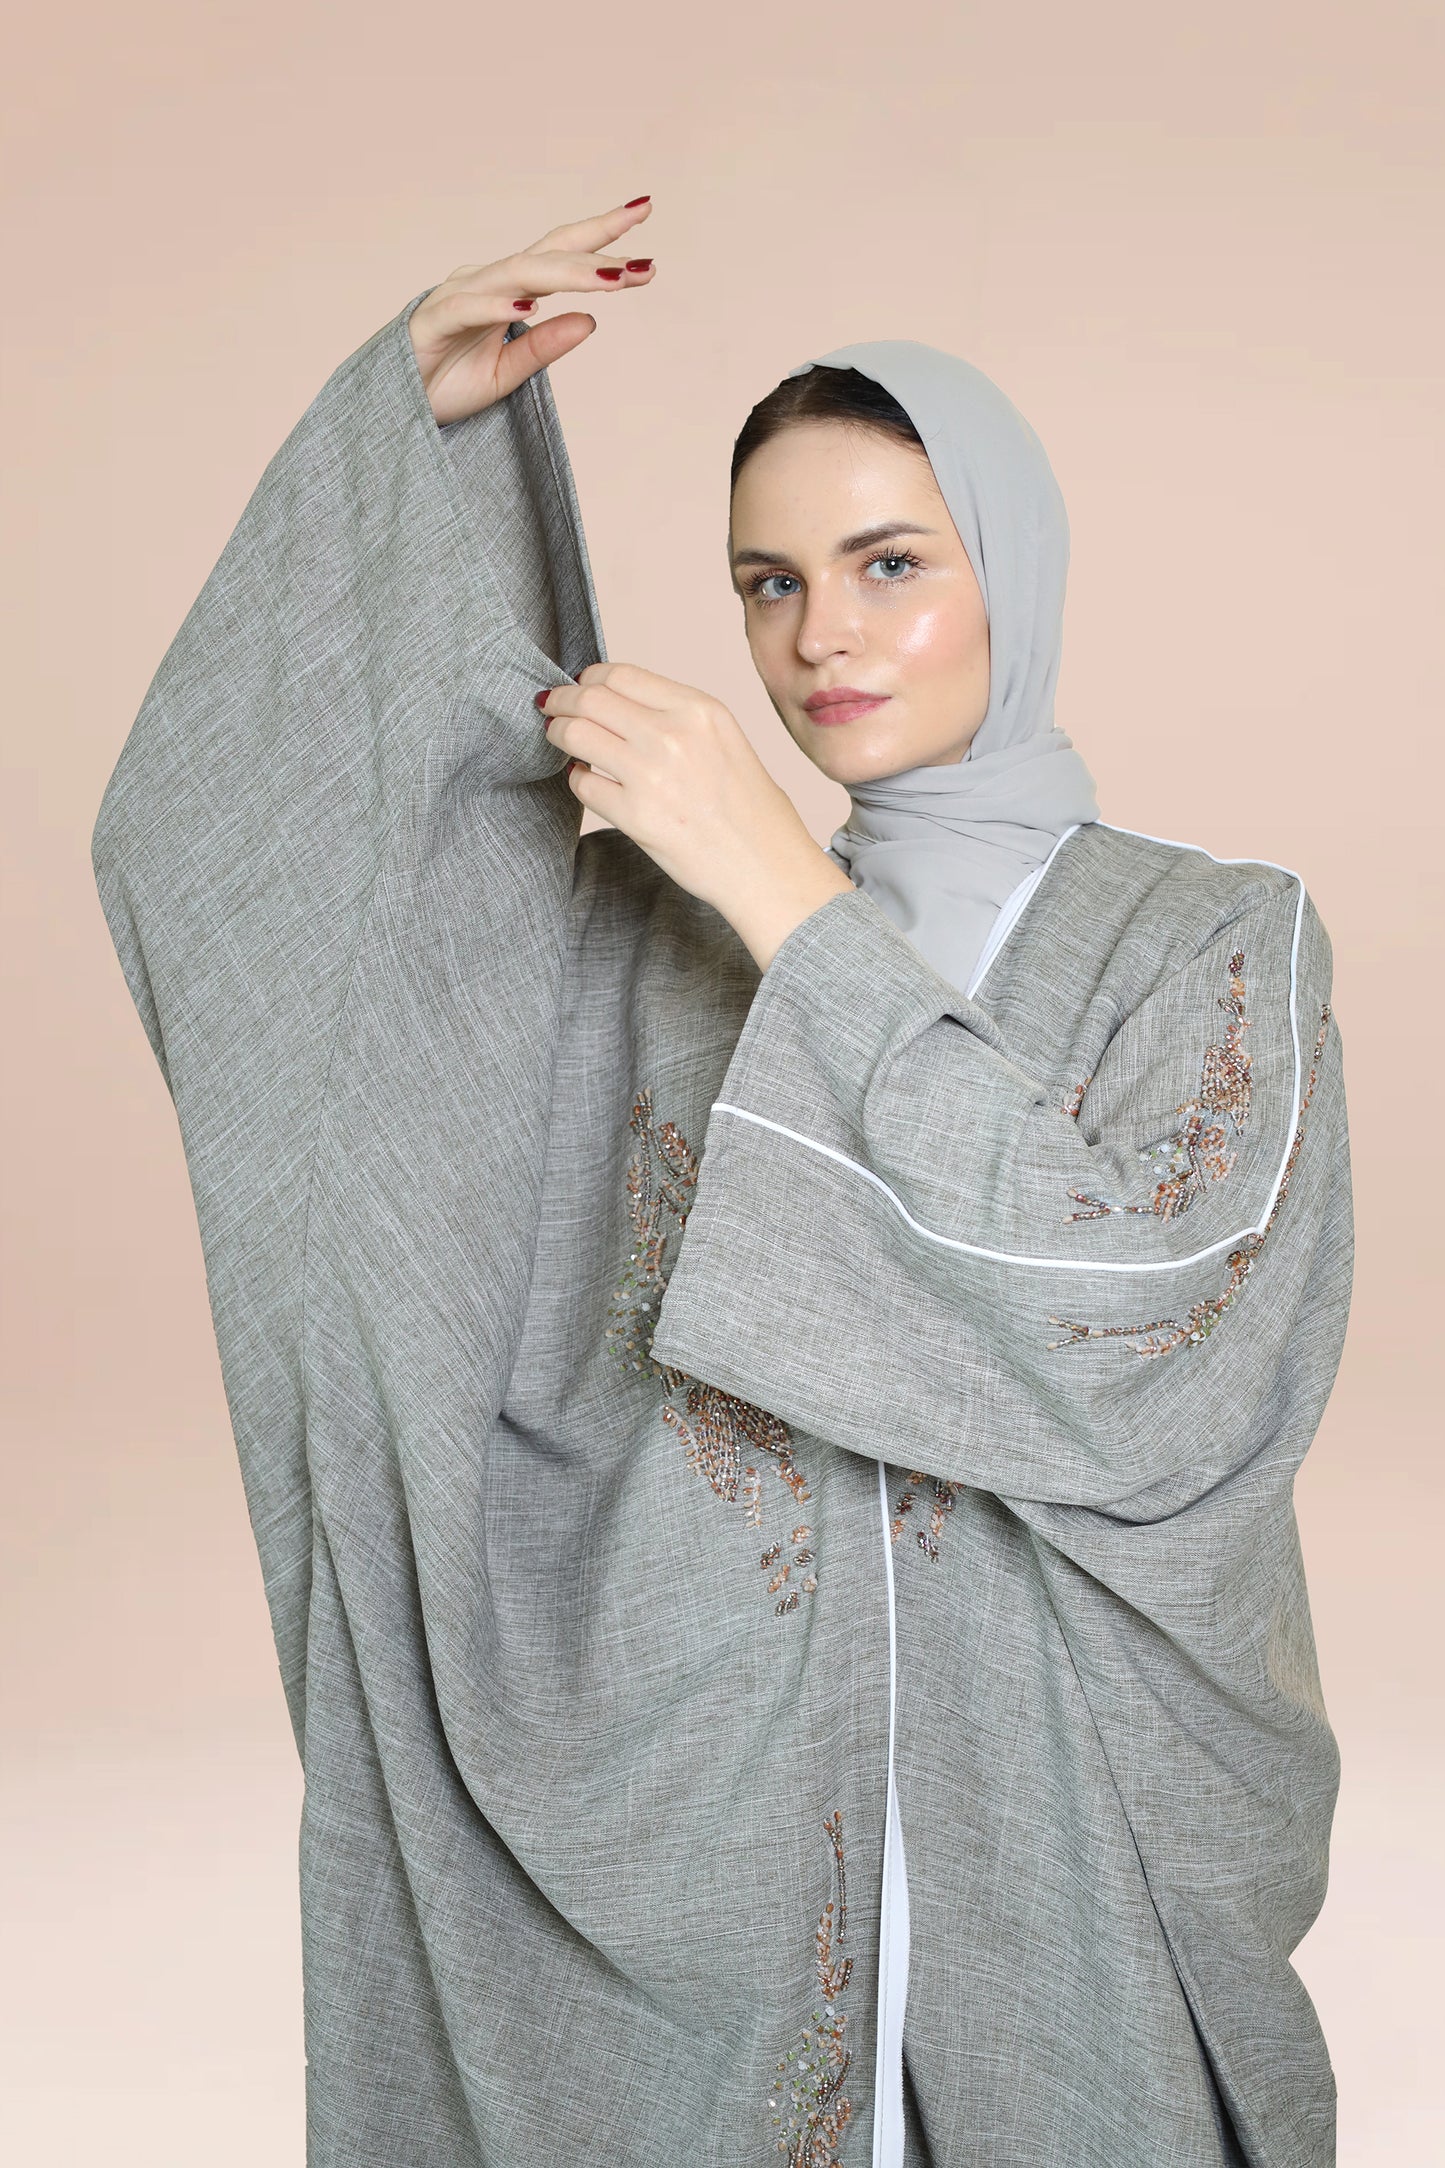 Dubai-made Nukhbaa brand Abaya a reflection of Dubai's luxury fashion scene.-N72A